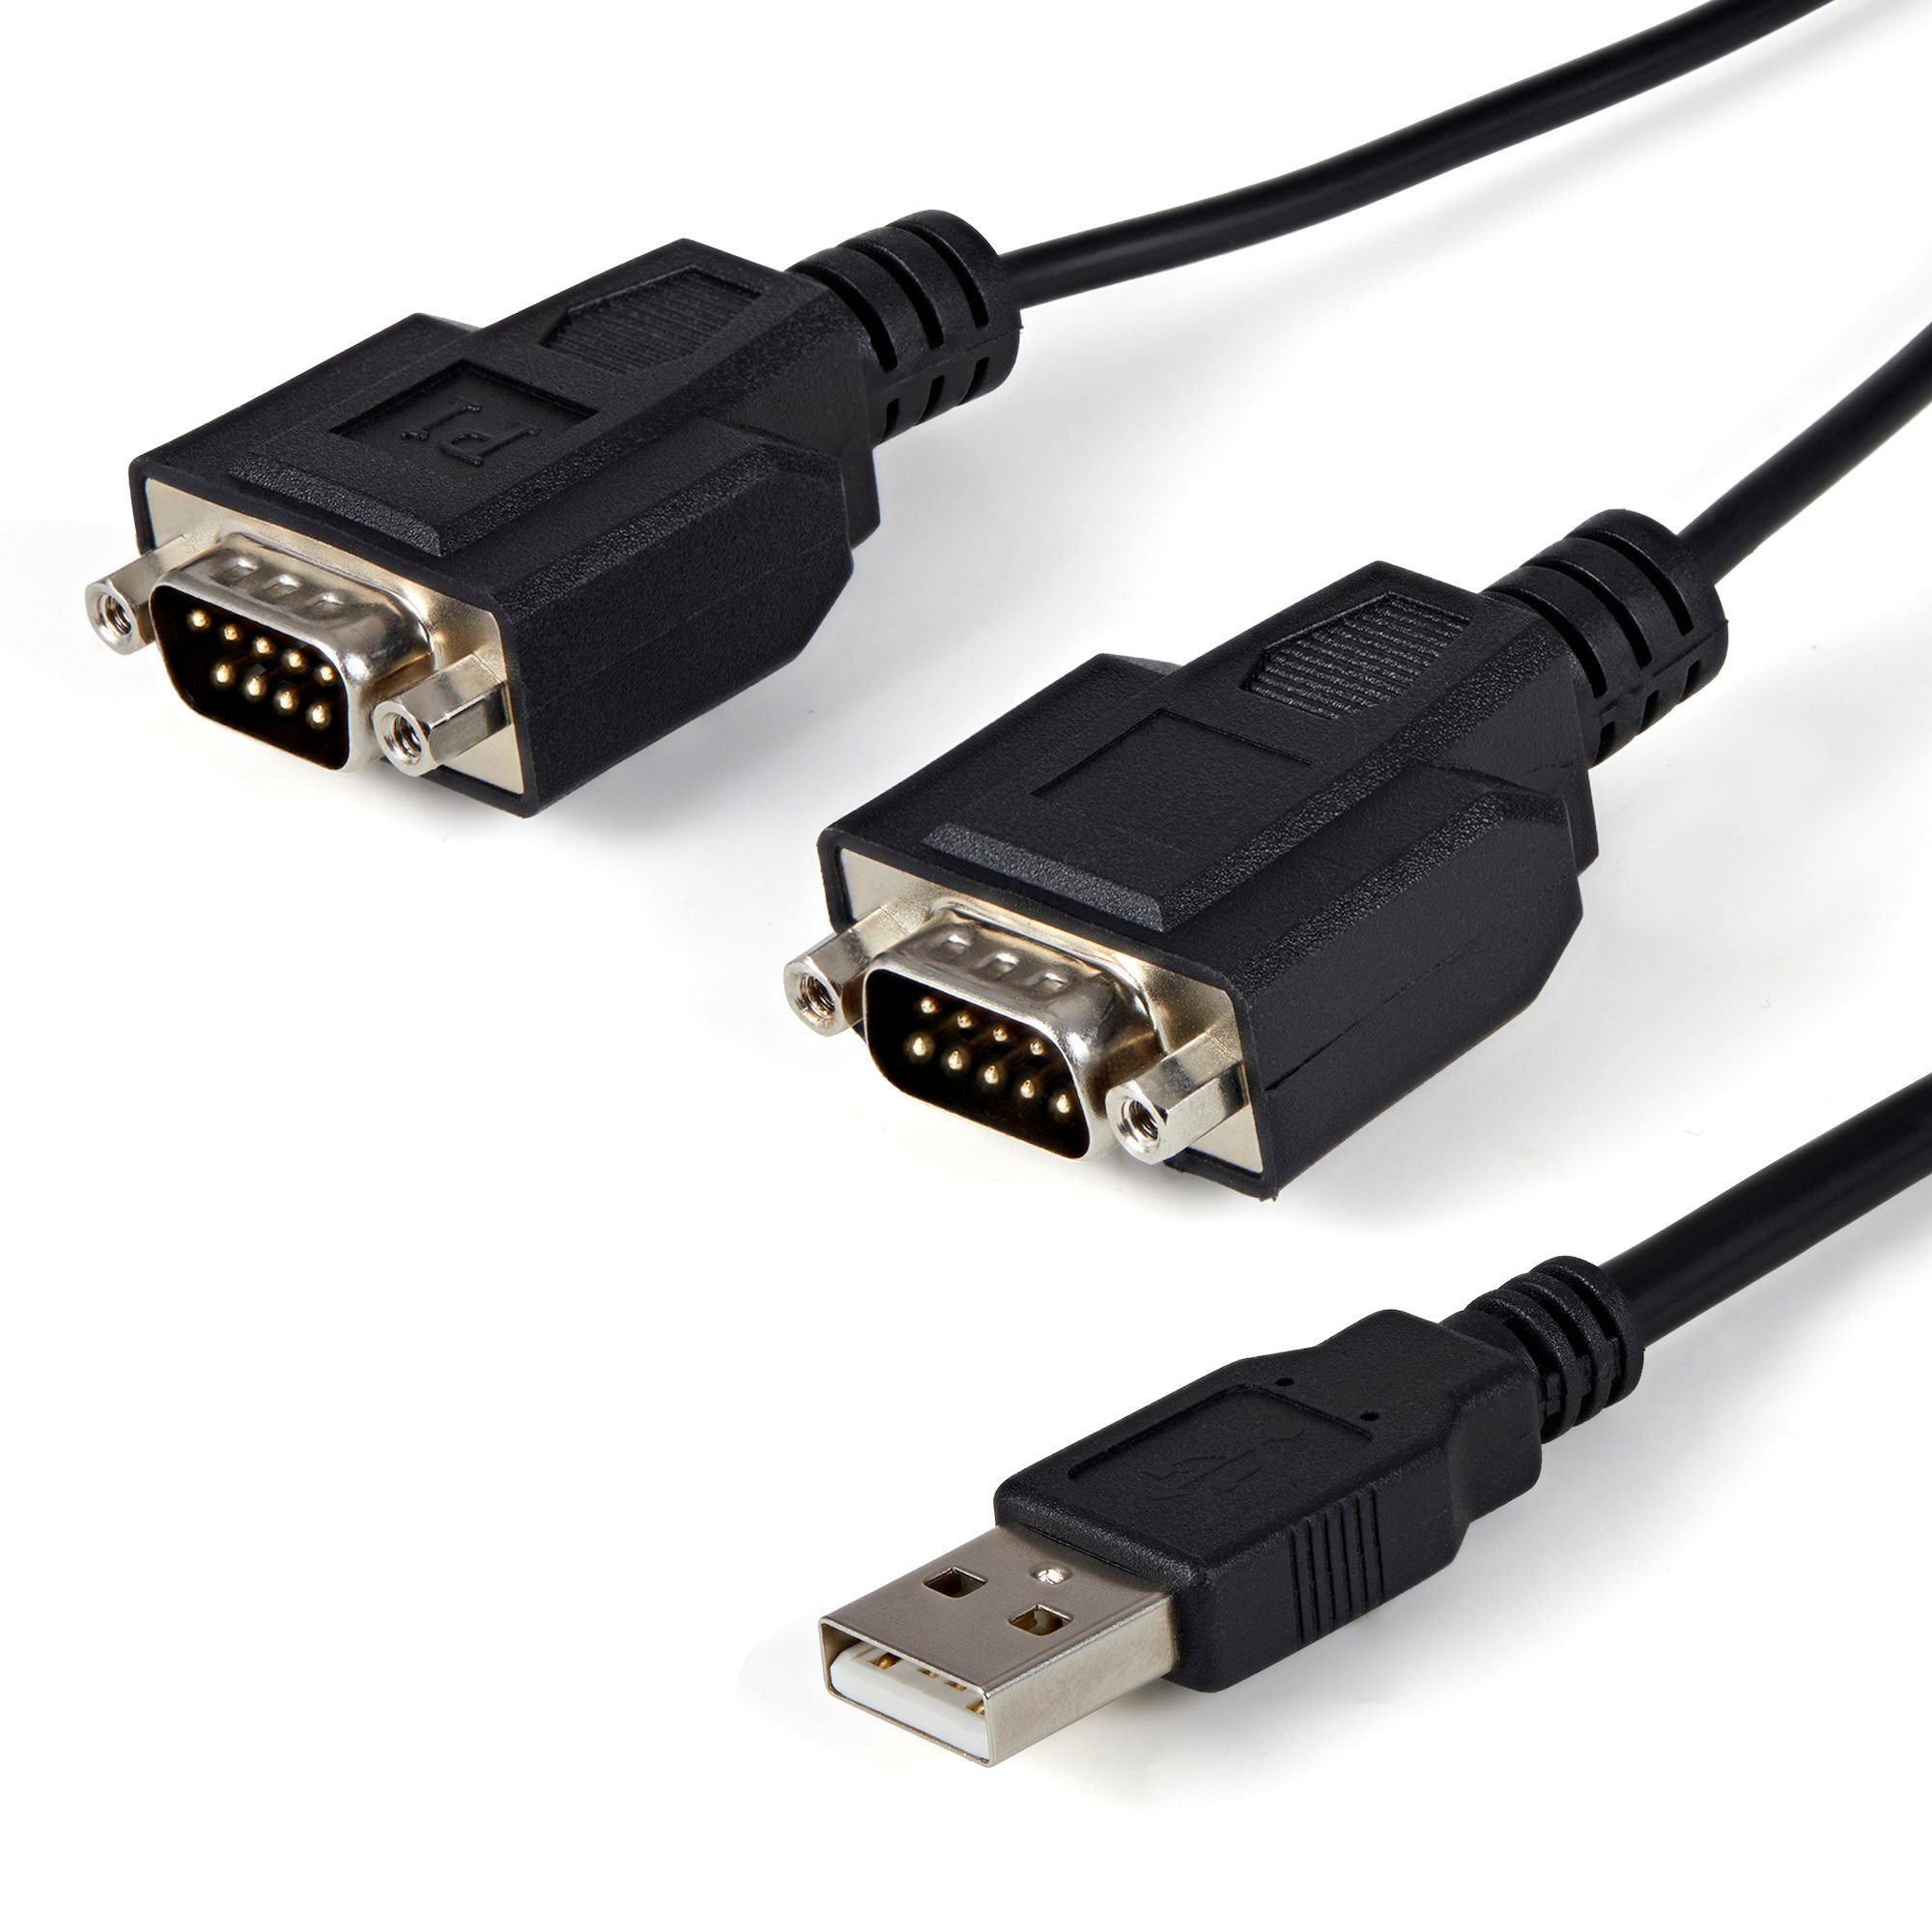 StarTech.com ICUSB2322F USB to Serial Adapter - 2 Port - COM Port